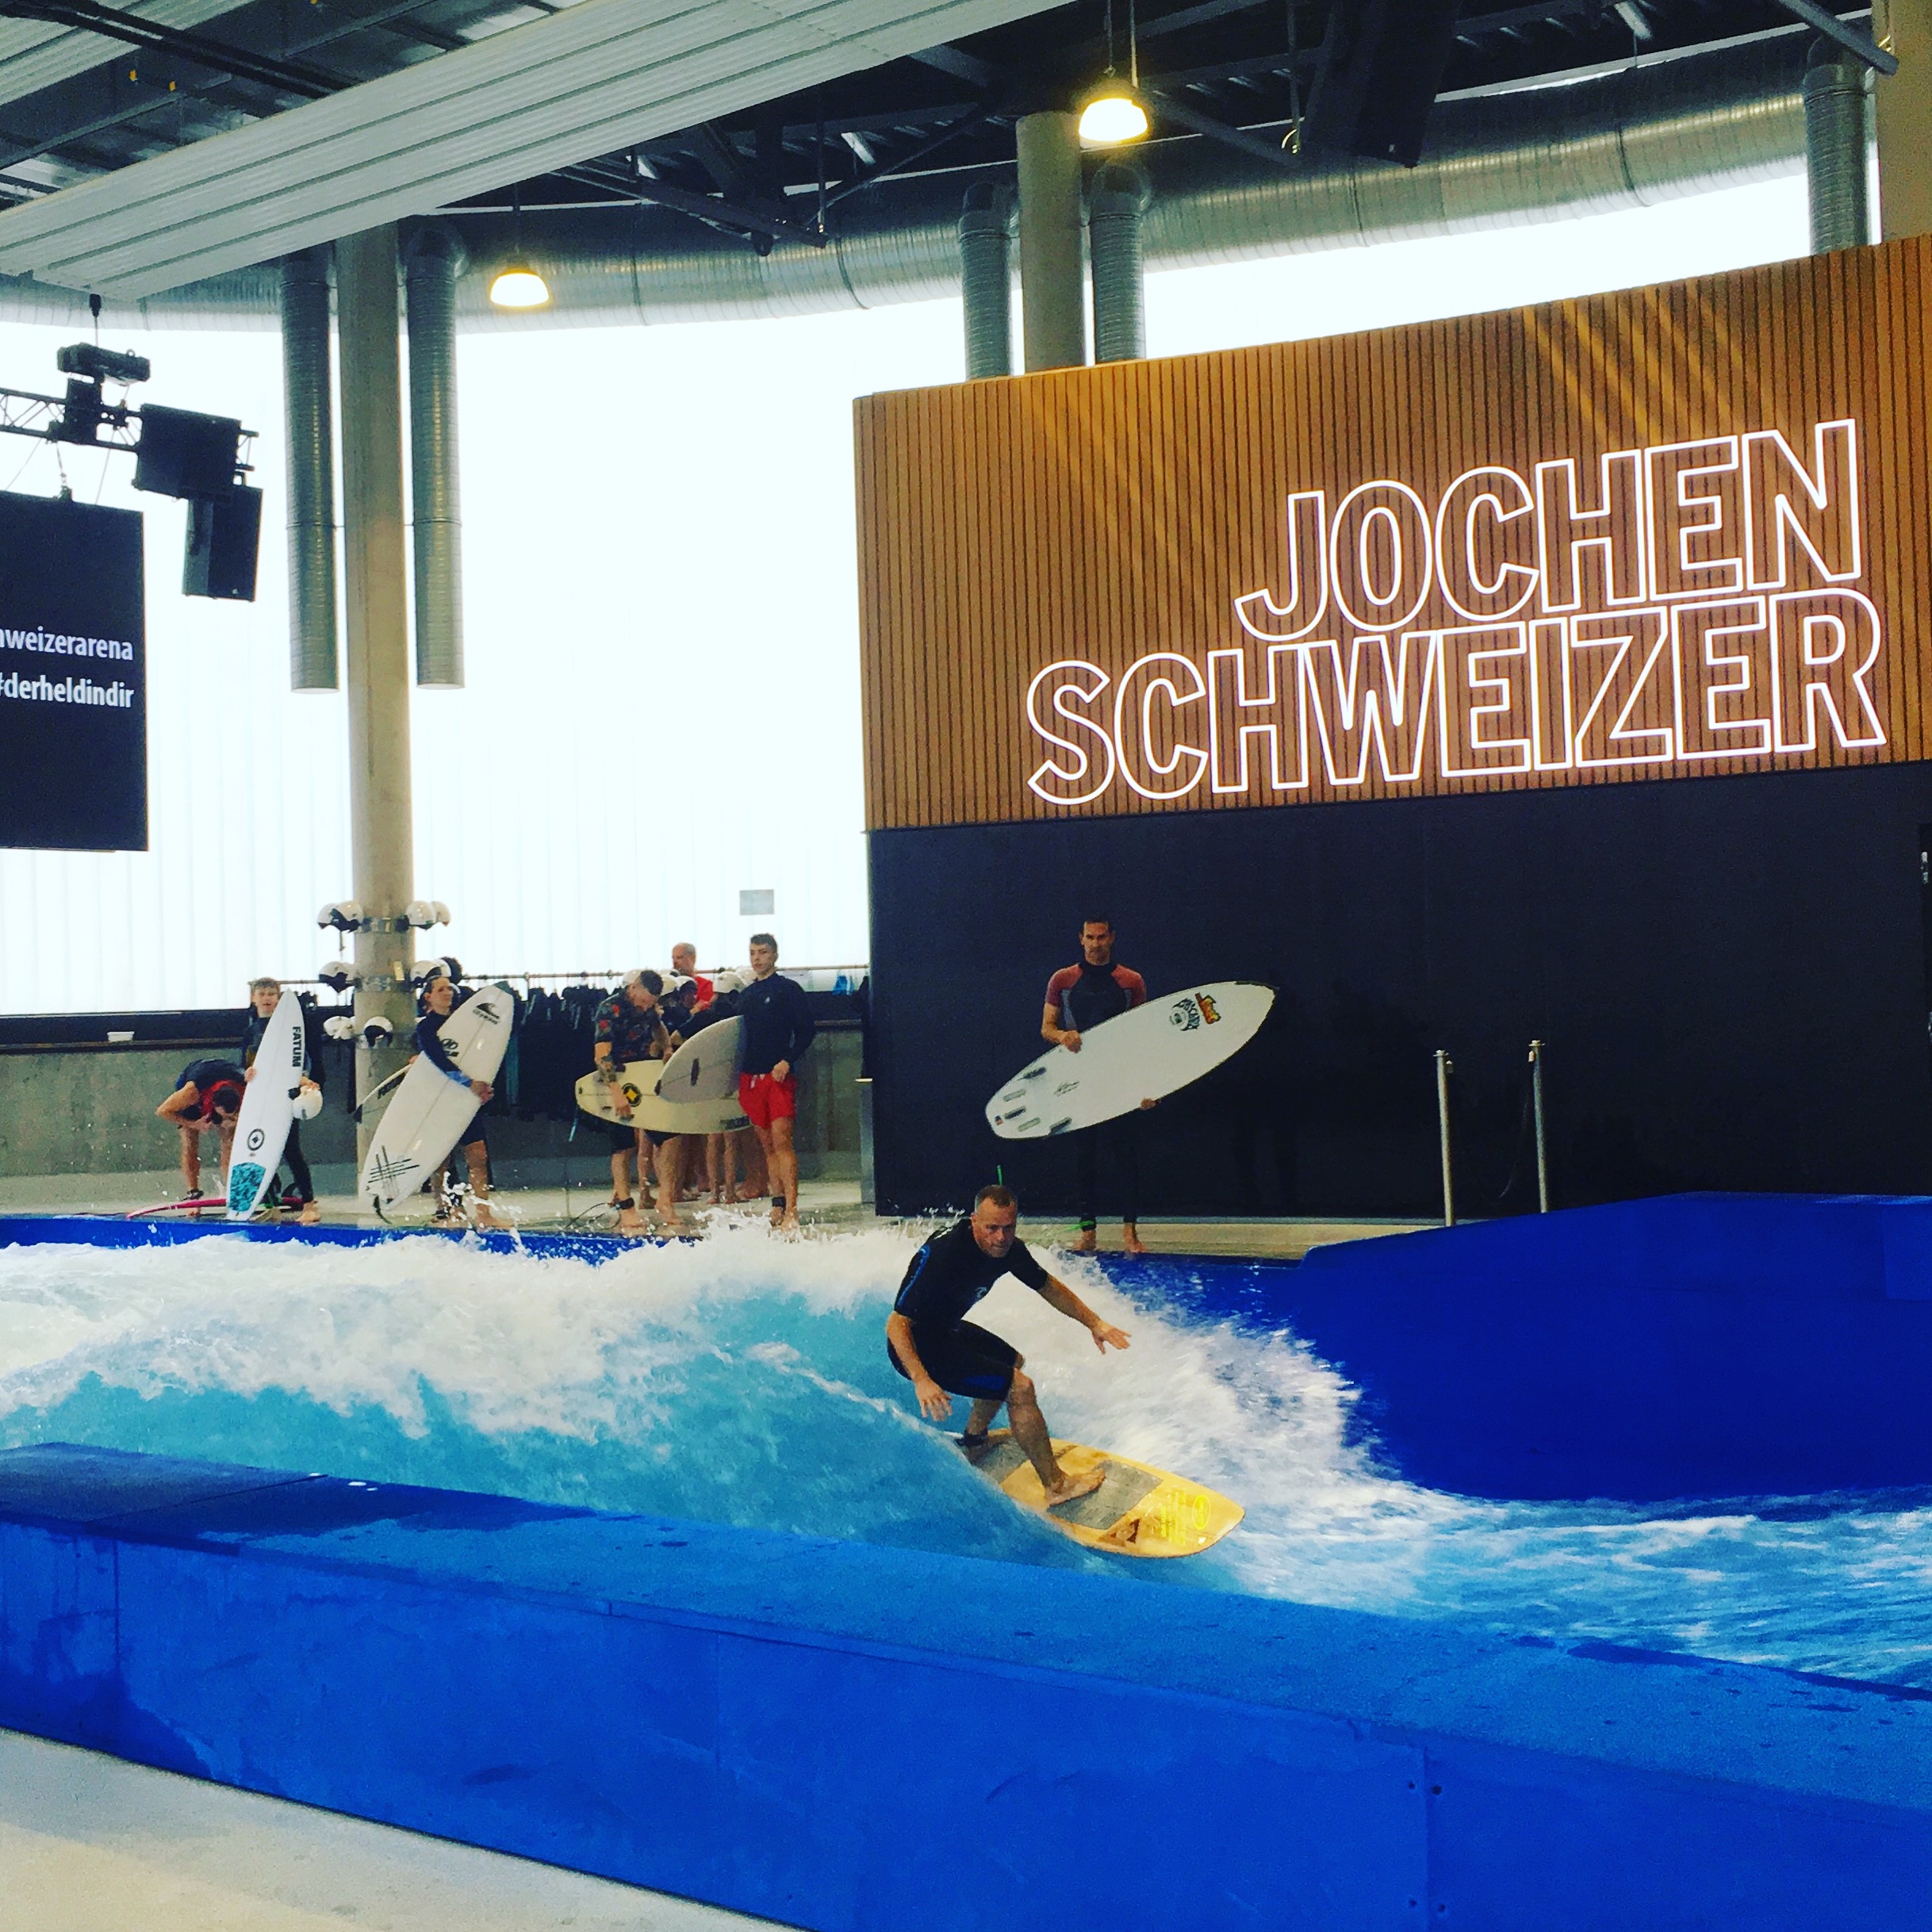 Indoor Surfen München Jochen Schweizer Arena Inland Surfing Citywave